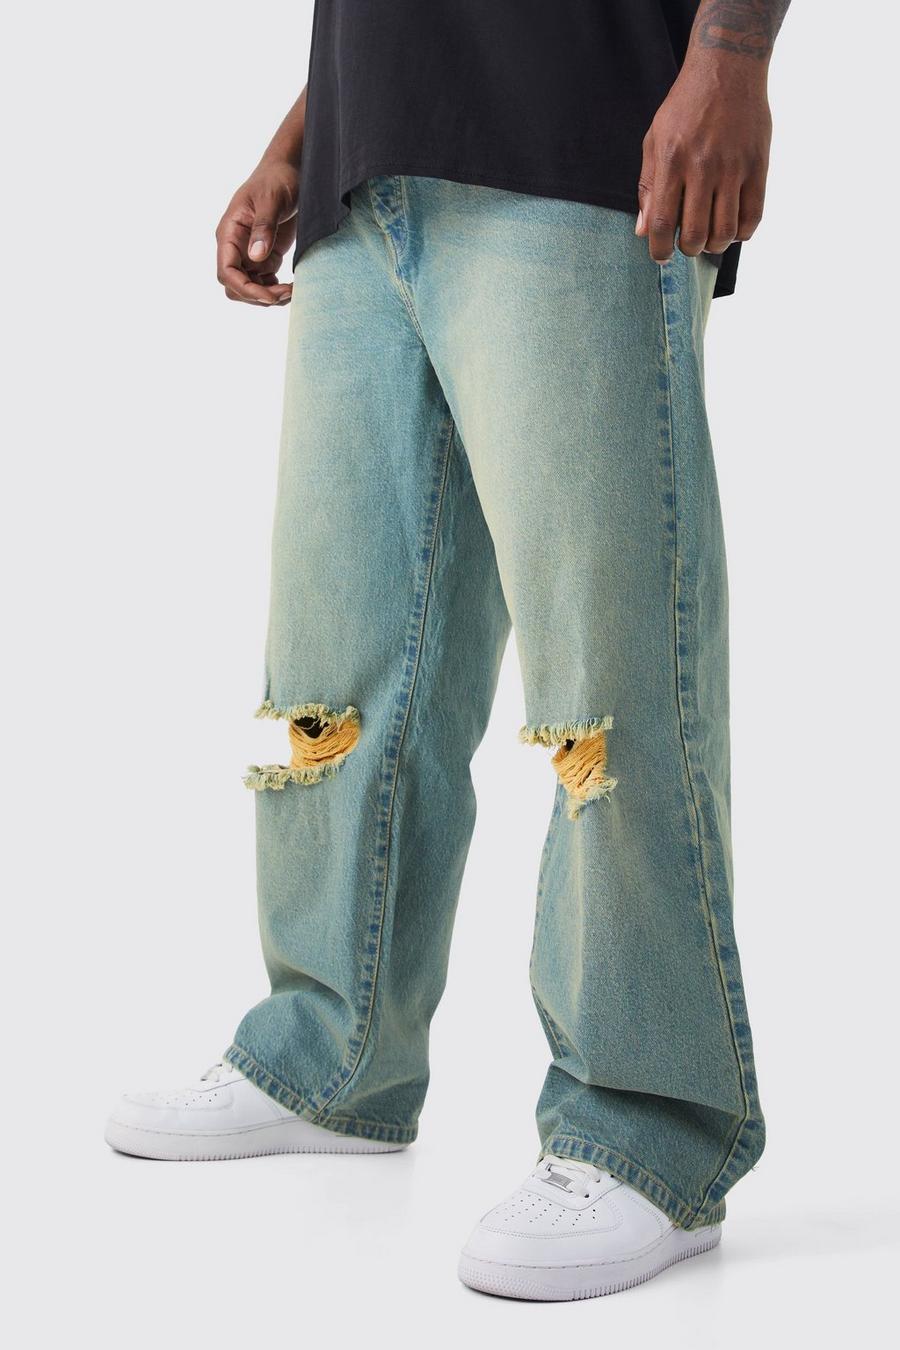 Jeans rilassati Plus Size in denim rigido colorato con strappi sul ginocchio, Green gerde